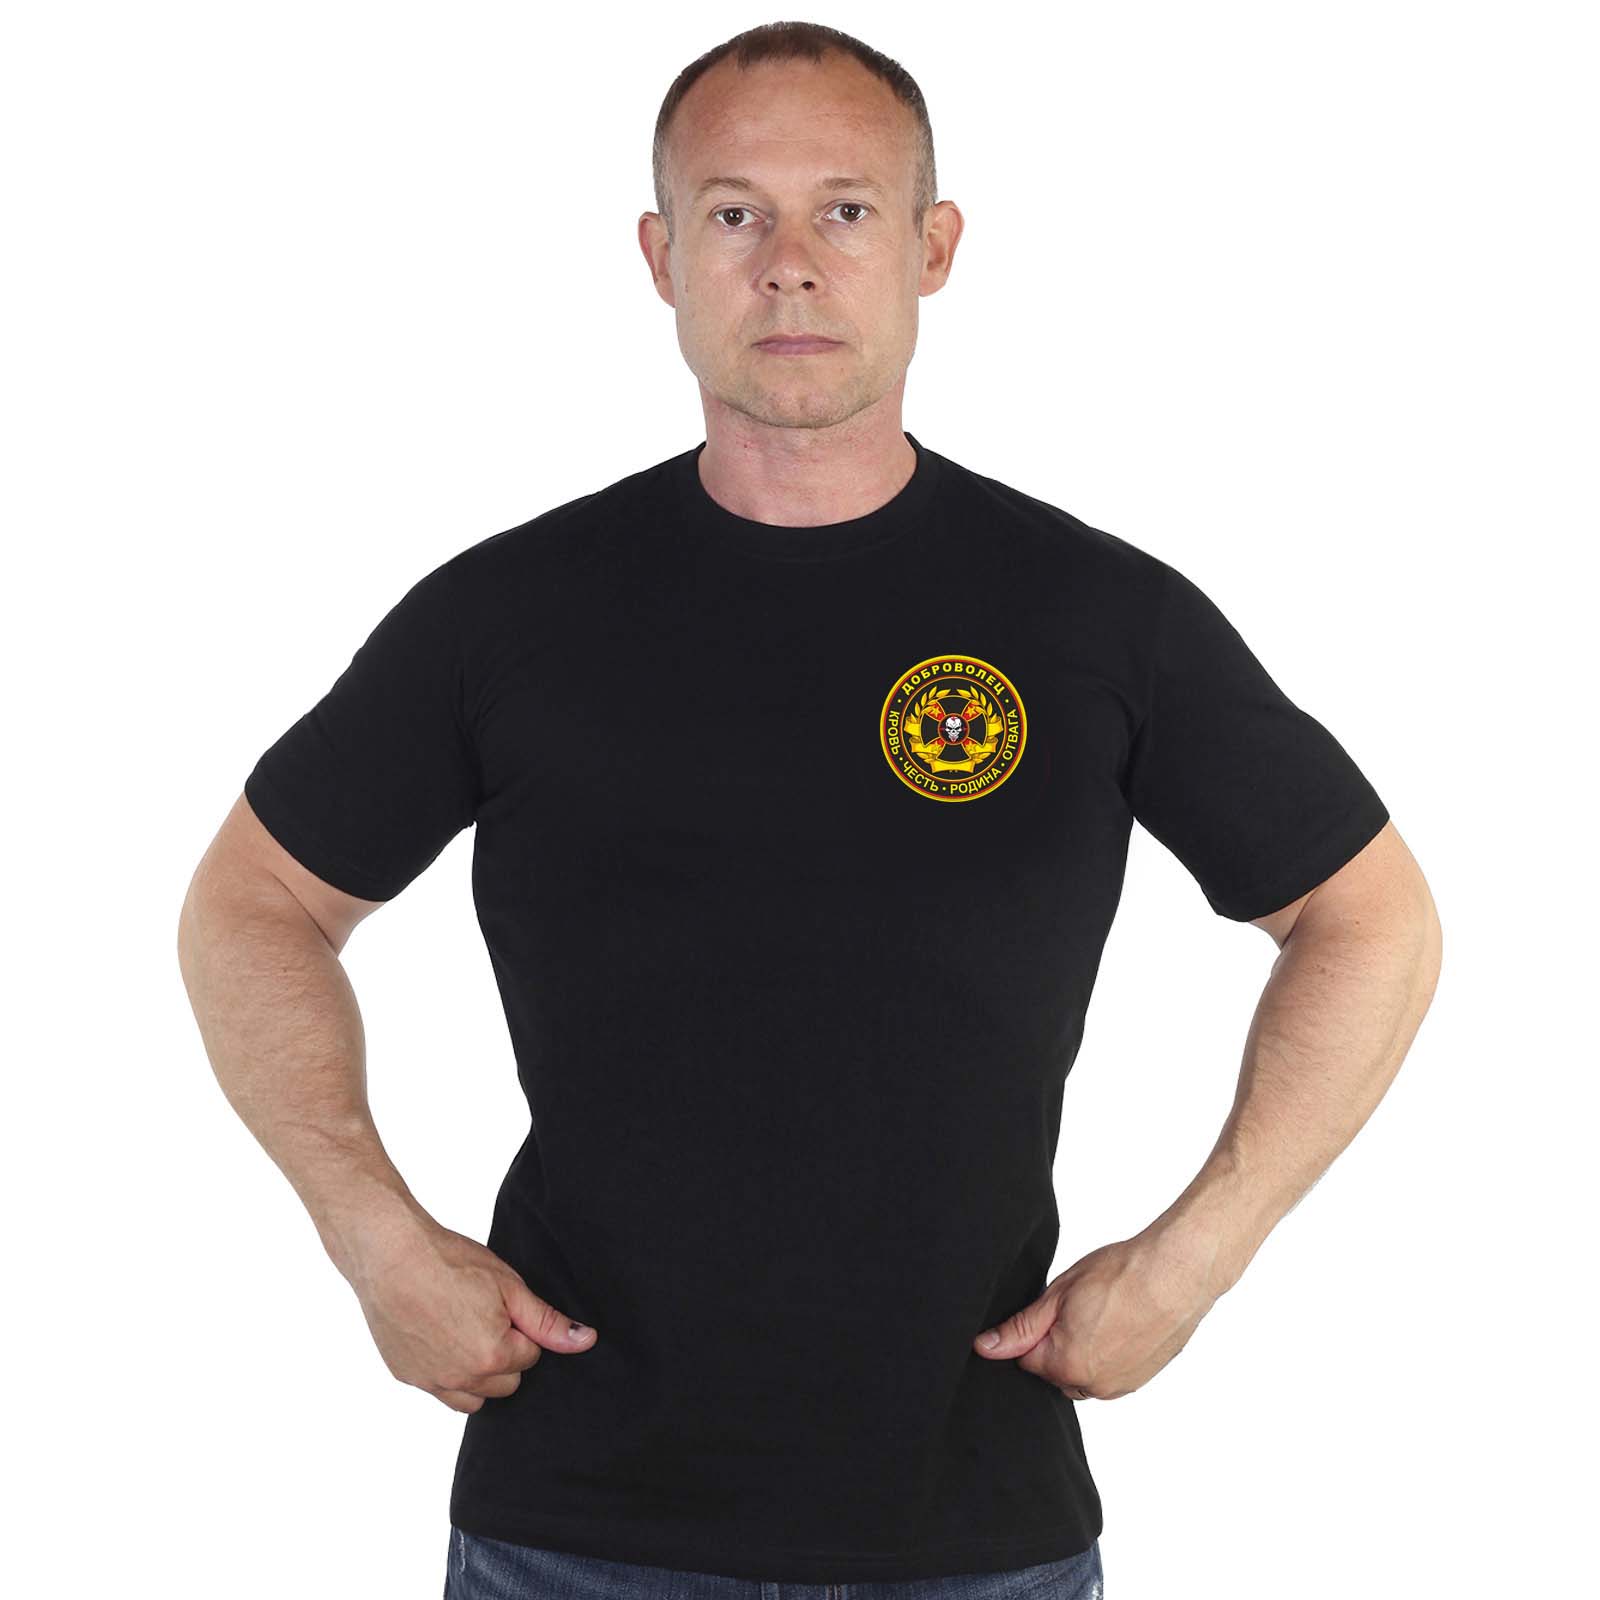 Купить черную мужскую футболку с термоаппликацией Доброволец онлайн